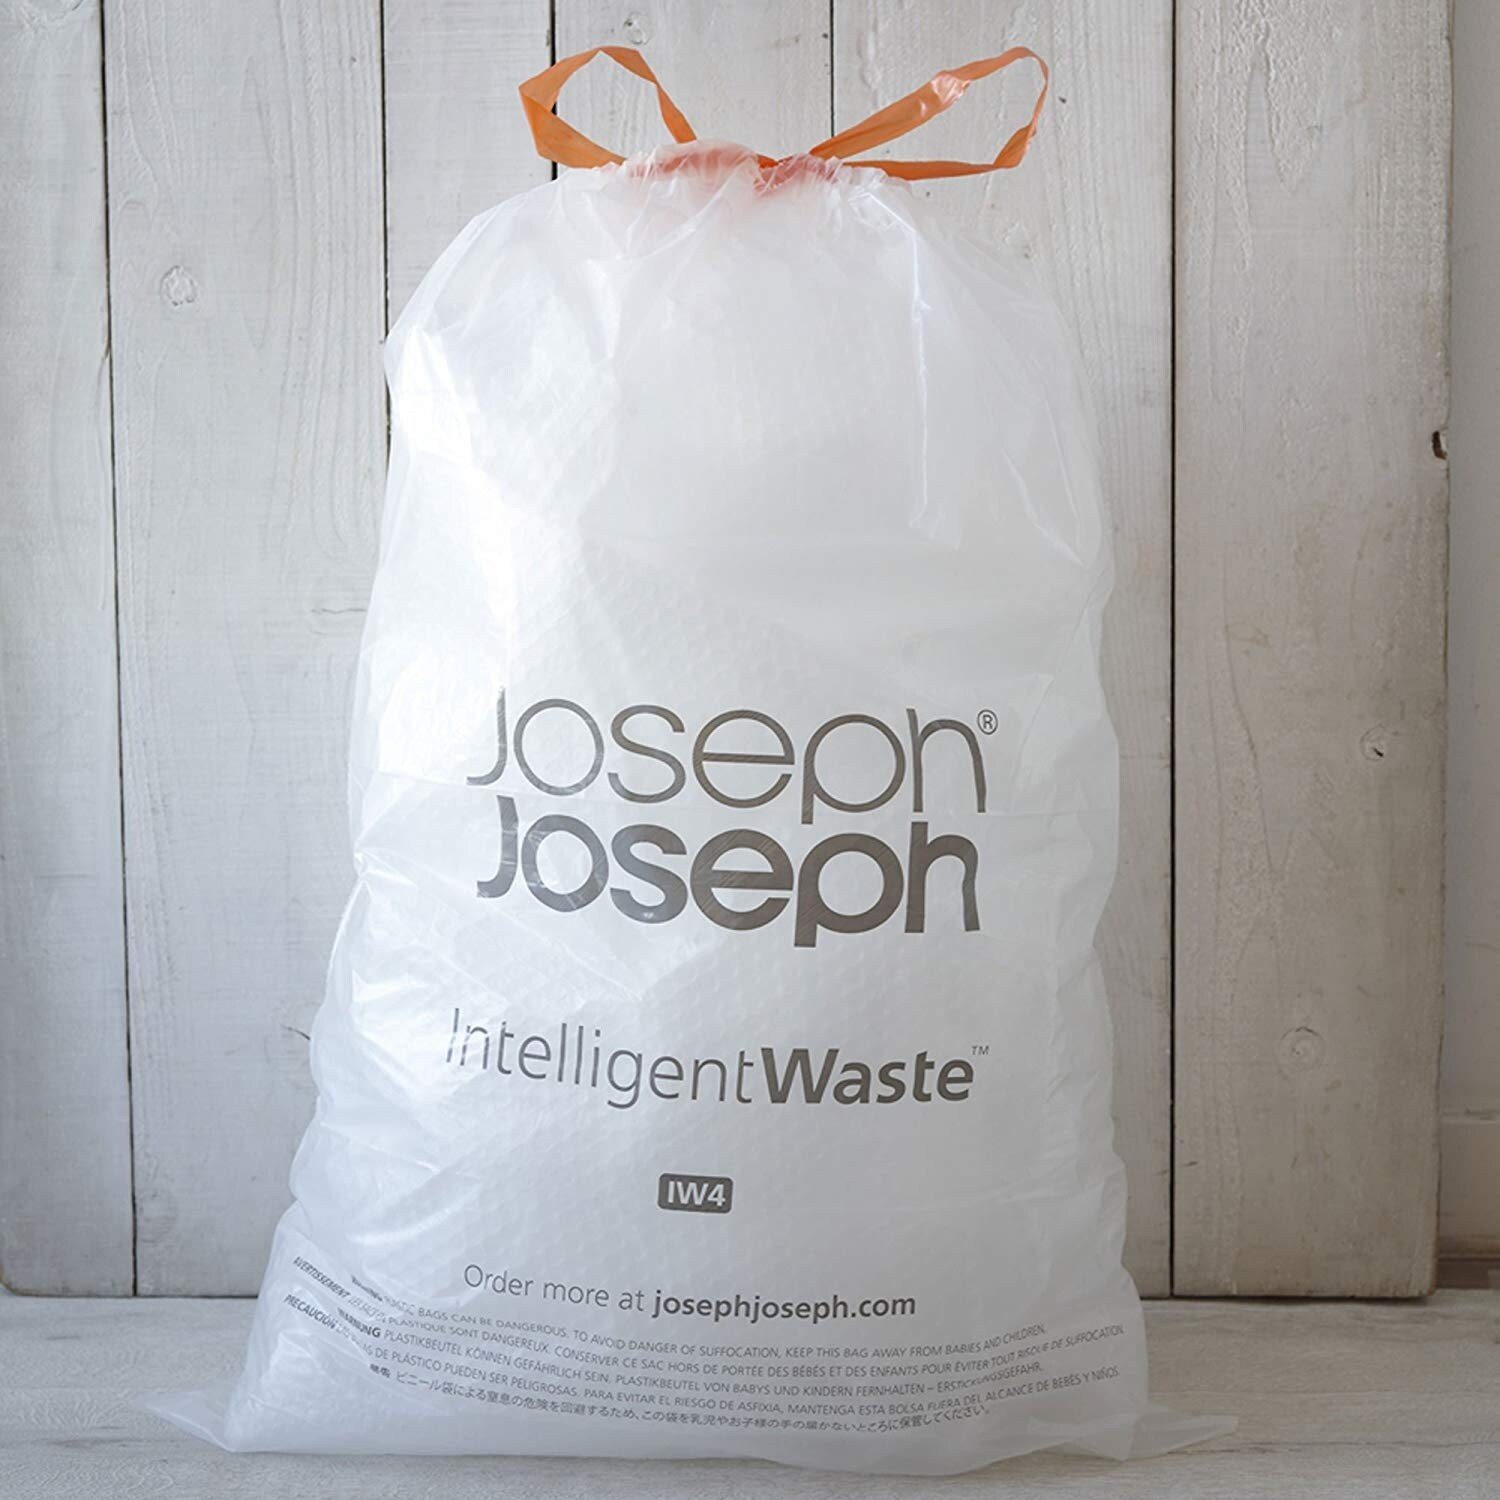 Joseph Joseph Titan 30L Trash Compactor Bin